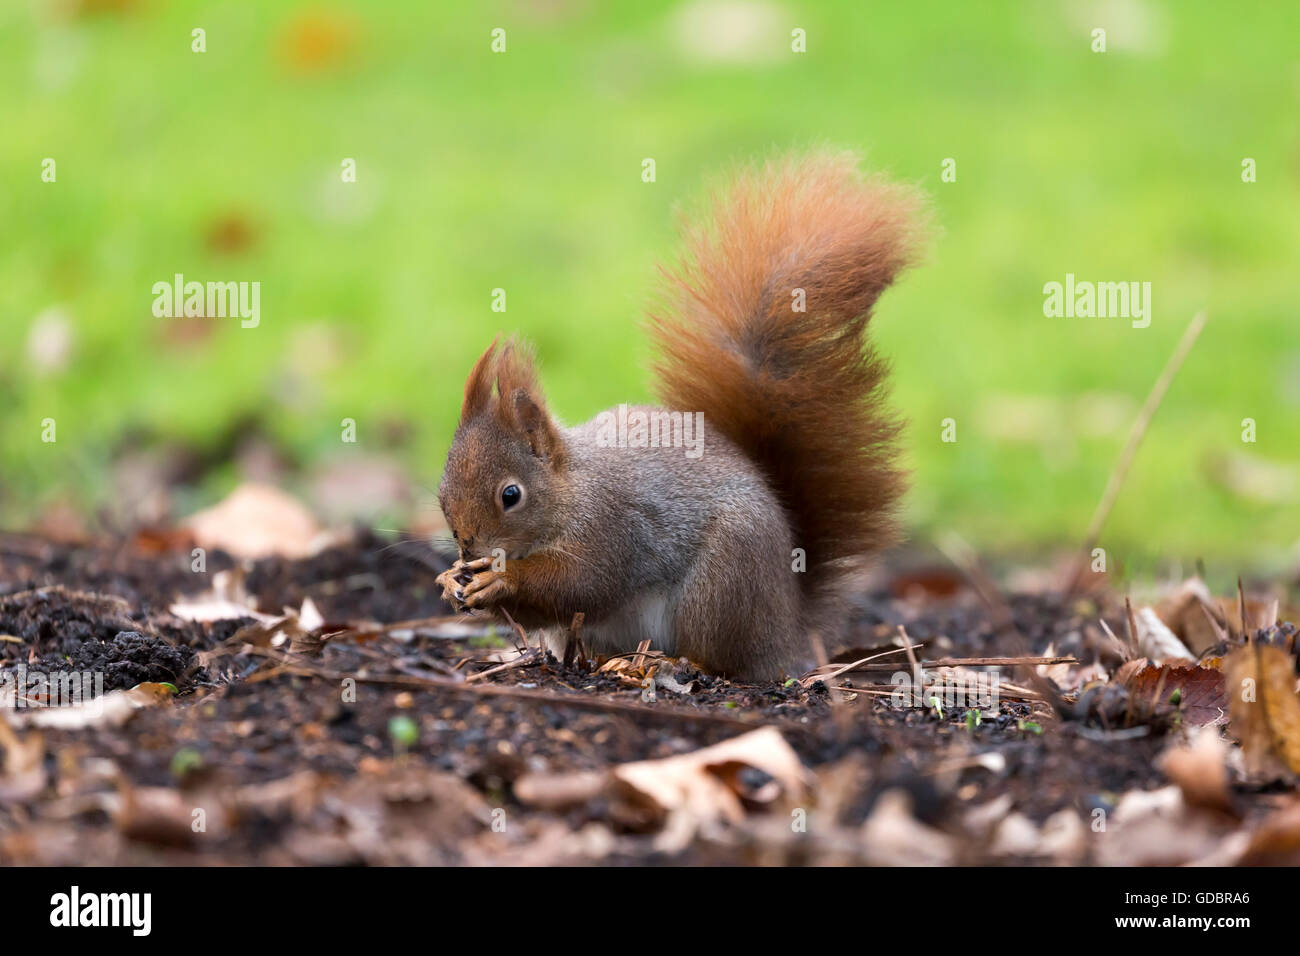 Red Squirrel, (Sciurus vulgaris), Germany, wildlife Stock Photo